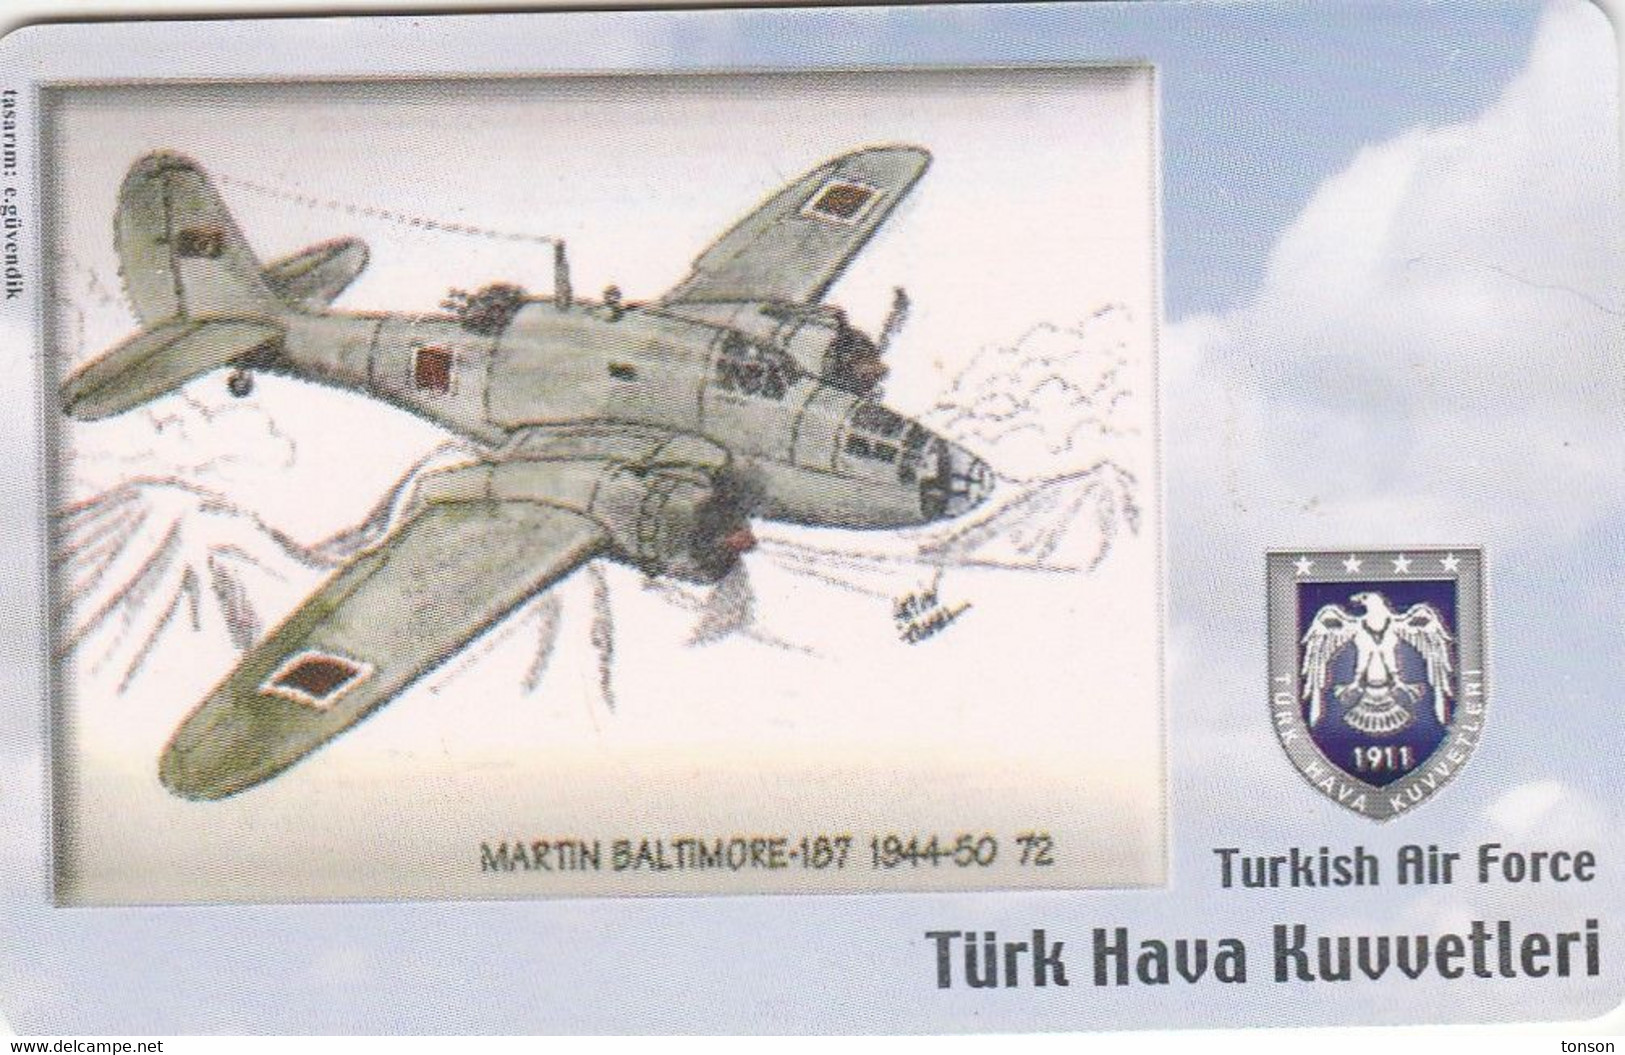 Turkey, TR-C-147, Turkish Air Force, Martin Baltimore-187 1944-50, Airplane, 2 Scans. - Türkei